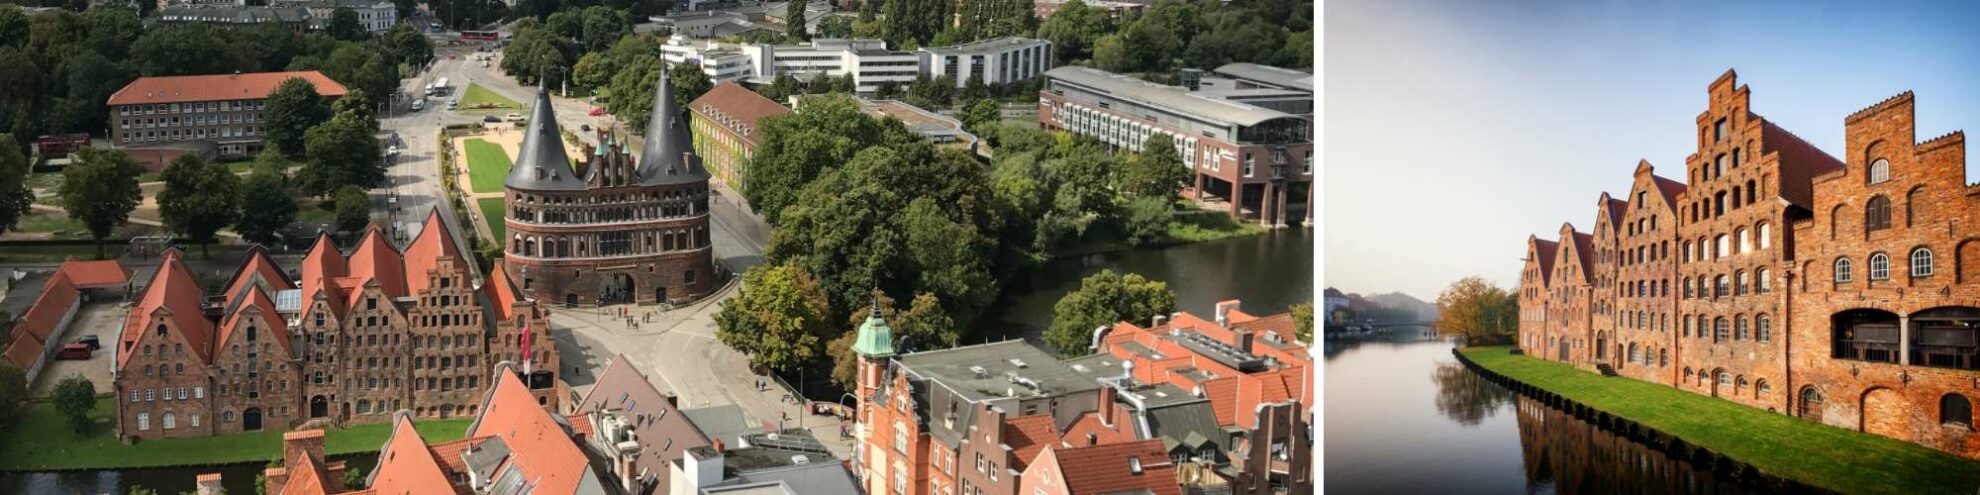 Die Stadt Lübeck aus der Luftperspektive